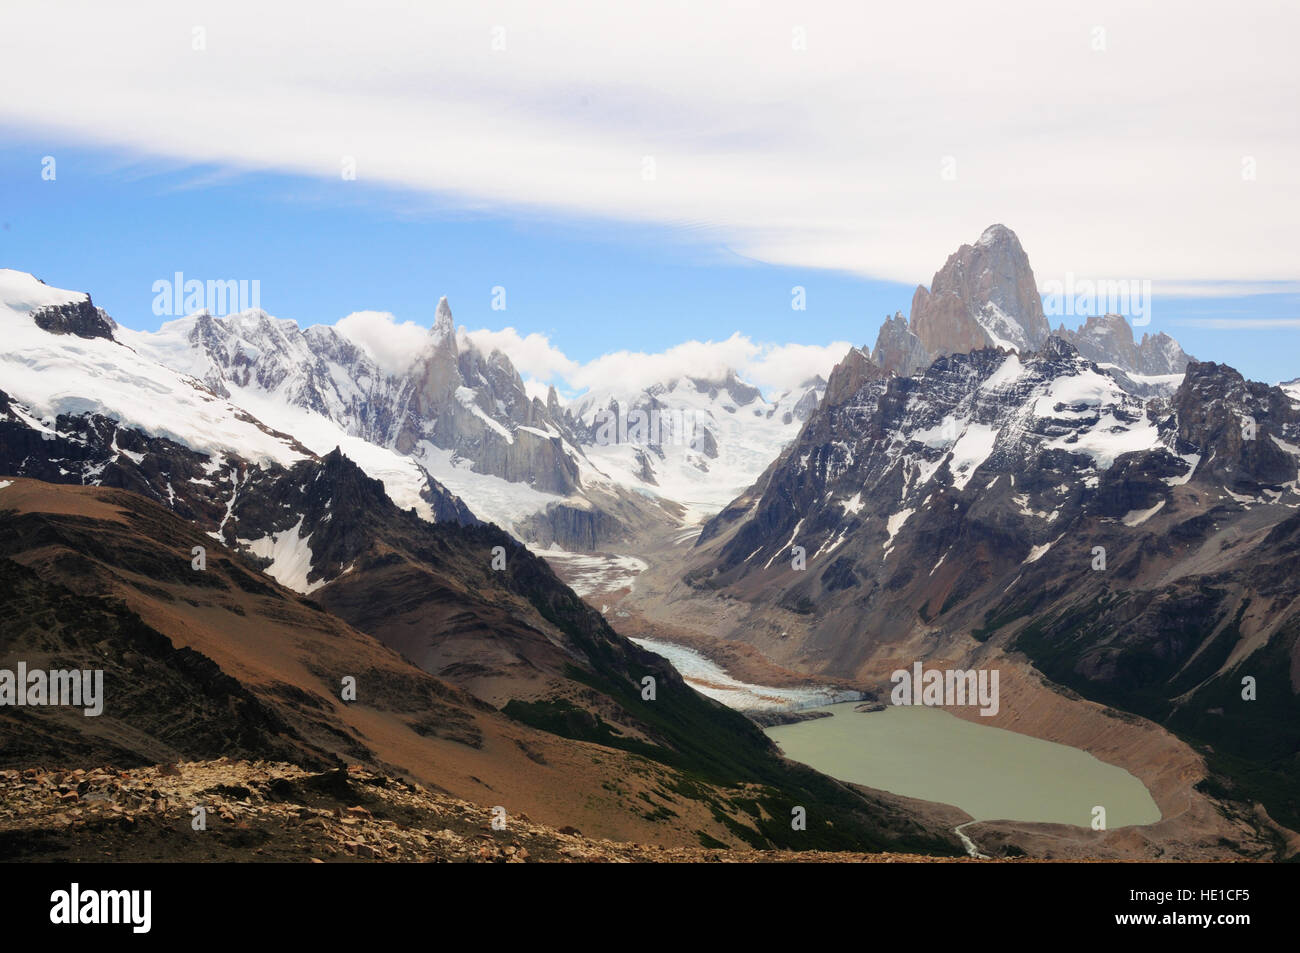 Mt. Fitzroy, 3375m, y el Cerro Torre, 3133m, visto desde el pliegue tumbado, el Parque Nacional Los Glaciares, Patagonia, Argentina Foto de stock